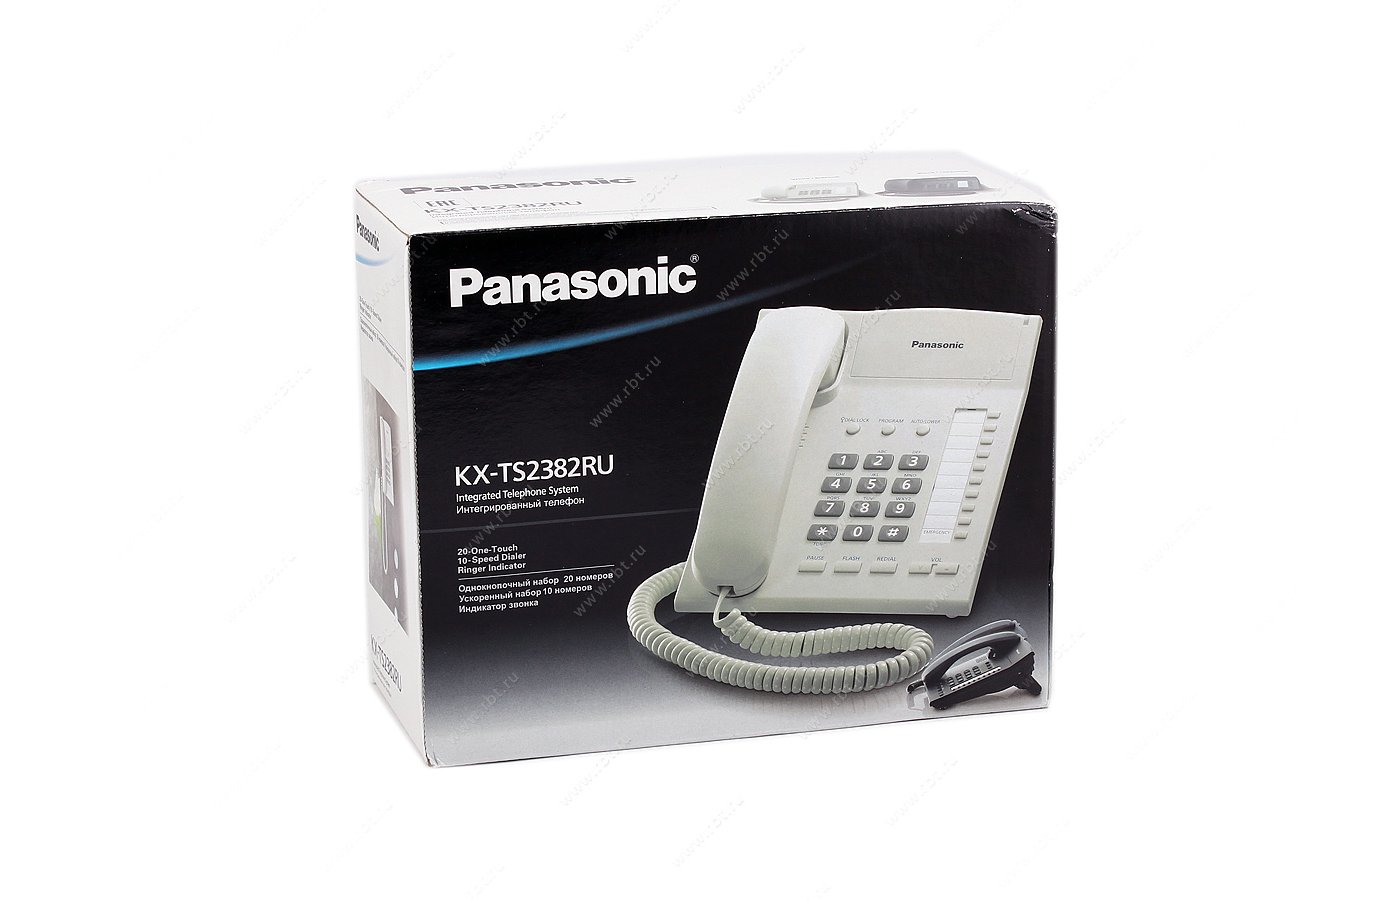 Panasonic kx ts2350. Panasonic KX-ts2382. Телефонный аппарат Panasonic KX-ts2350. Panasonic KX-ts2350 RUB. Телефон проводной Panasonic KX-ts2350ruw.